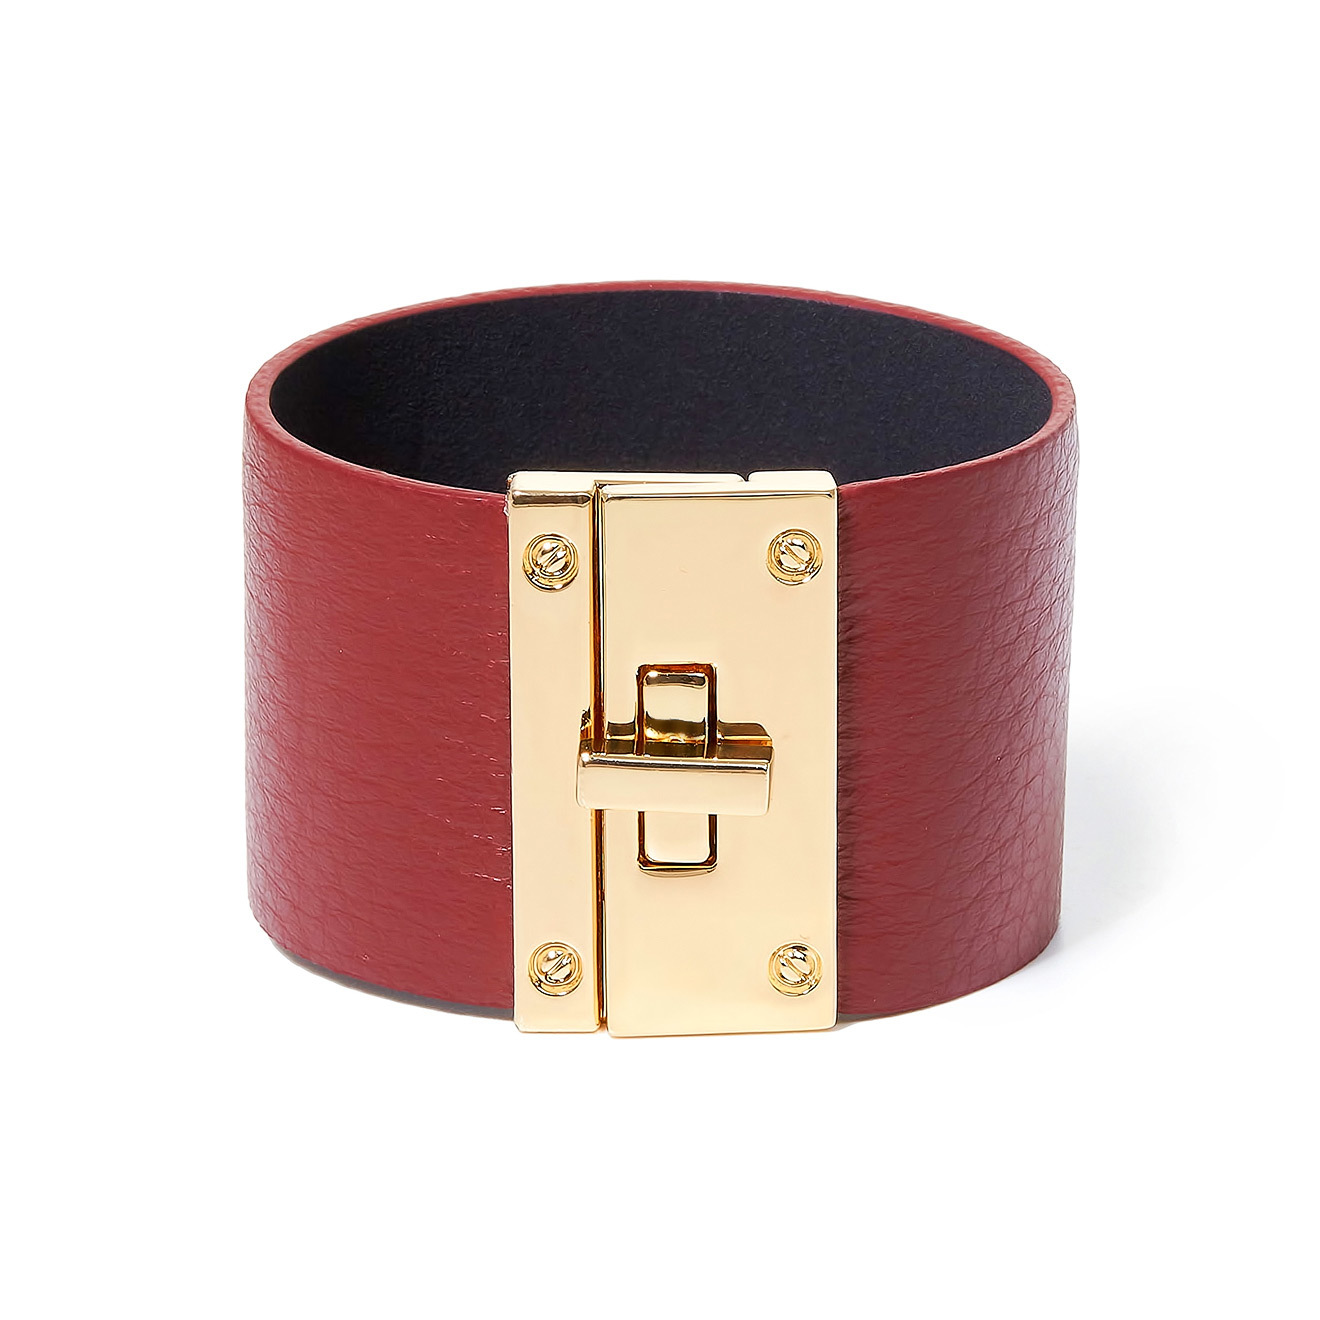 Tannum Бордовый кожаный браслет с металлическим замком tannum черный плетеный кожаный браслет с серебристым замком